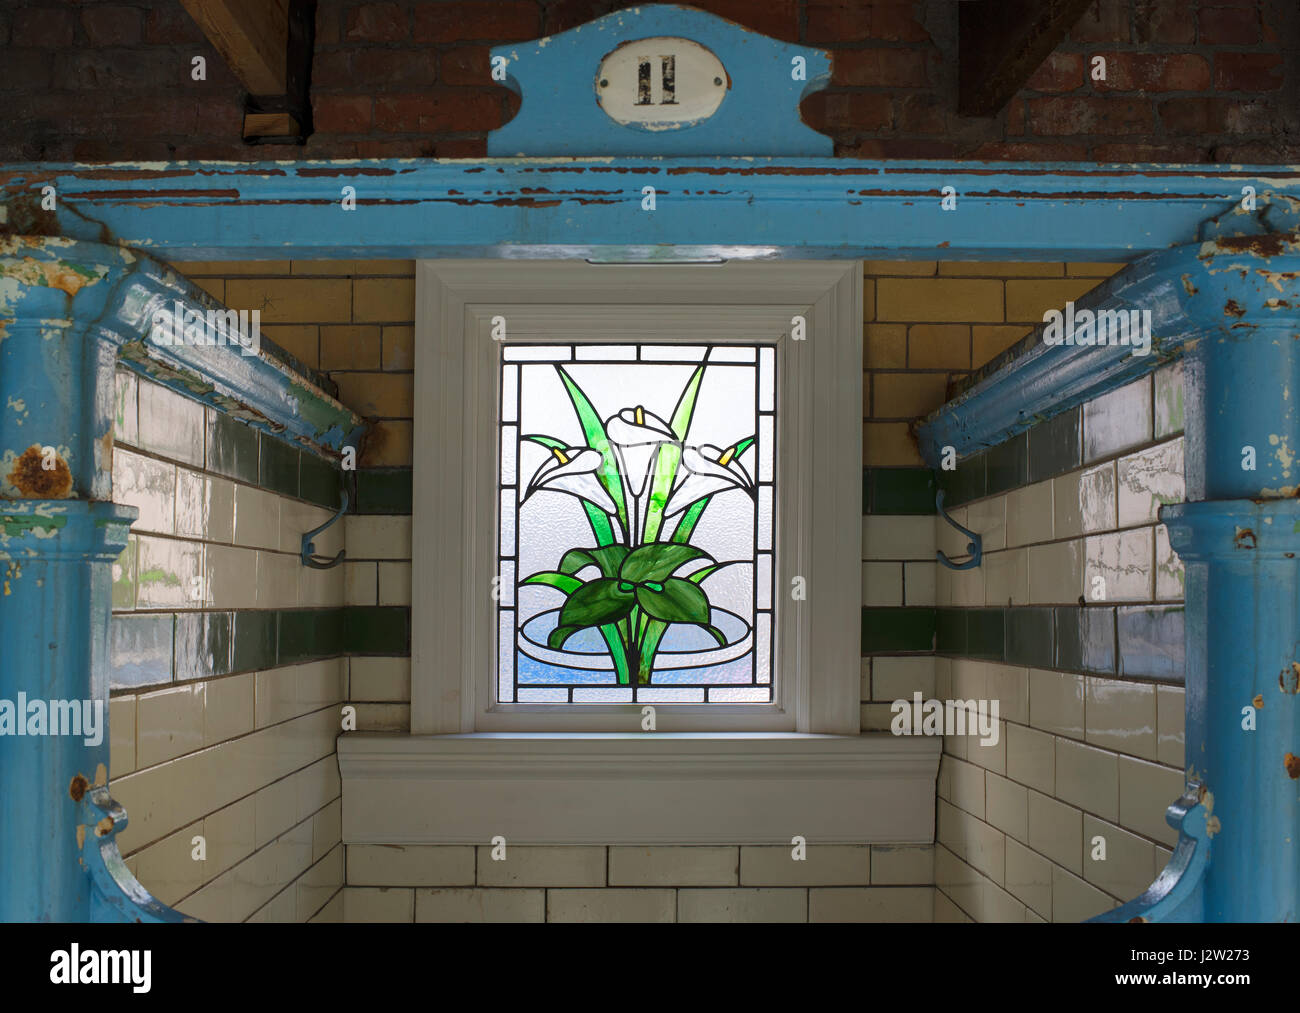 Un vitrail moderne dans une cabine de change de style édouardien, Victoria Baths, Manchester, Angleterre Banque D'Images